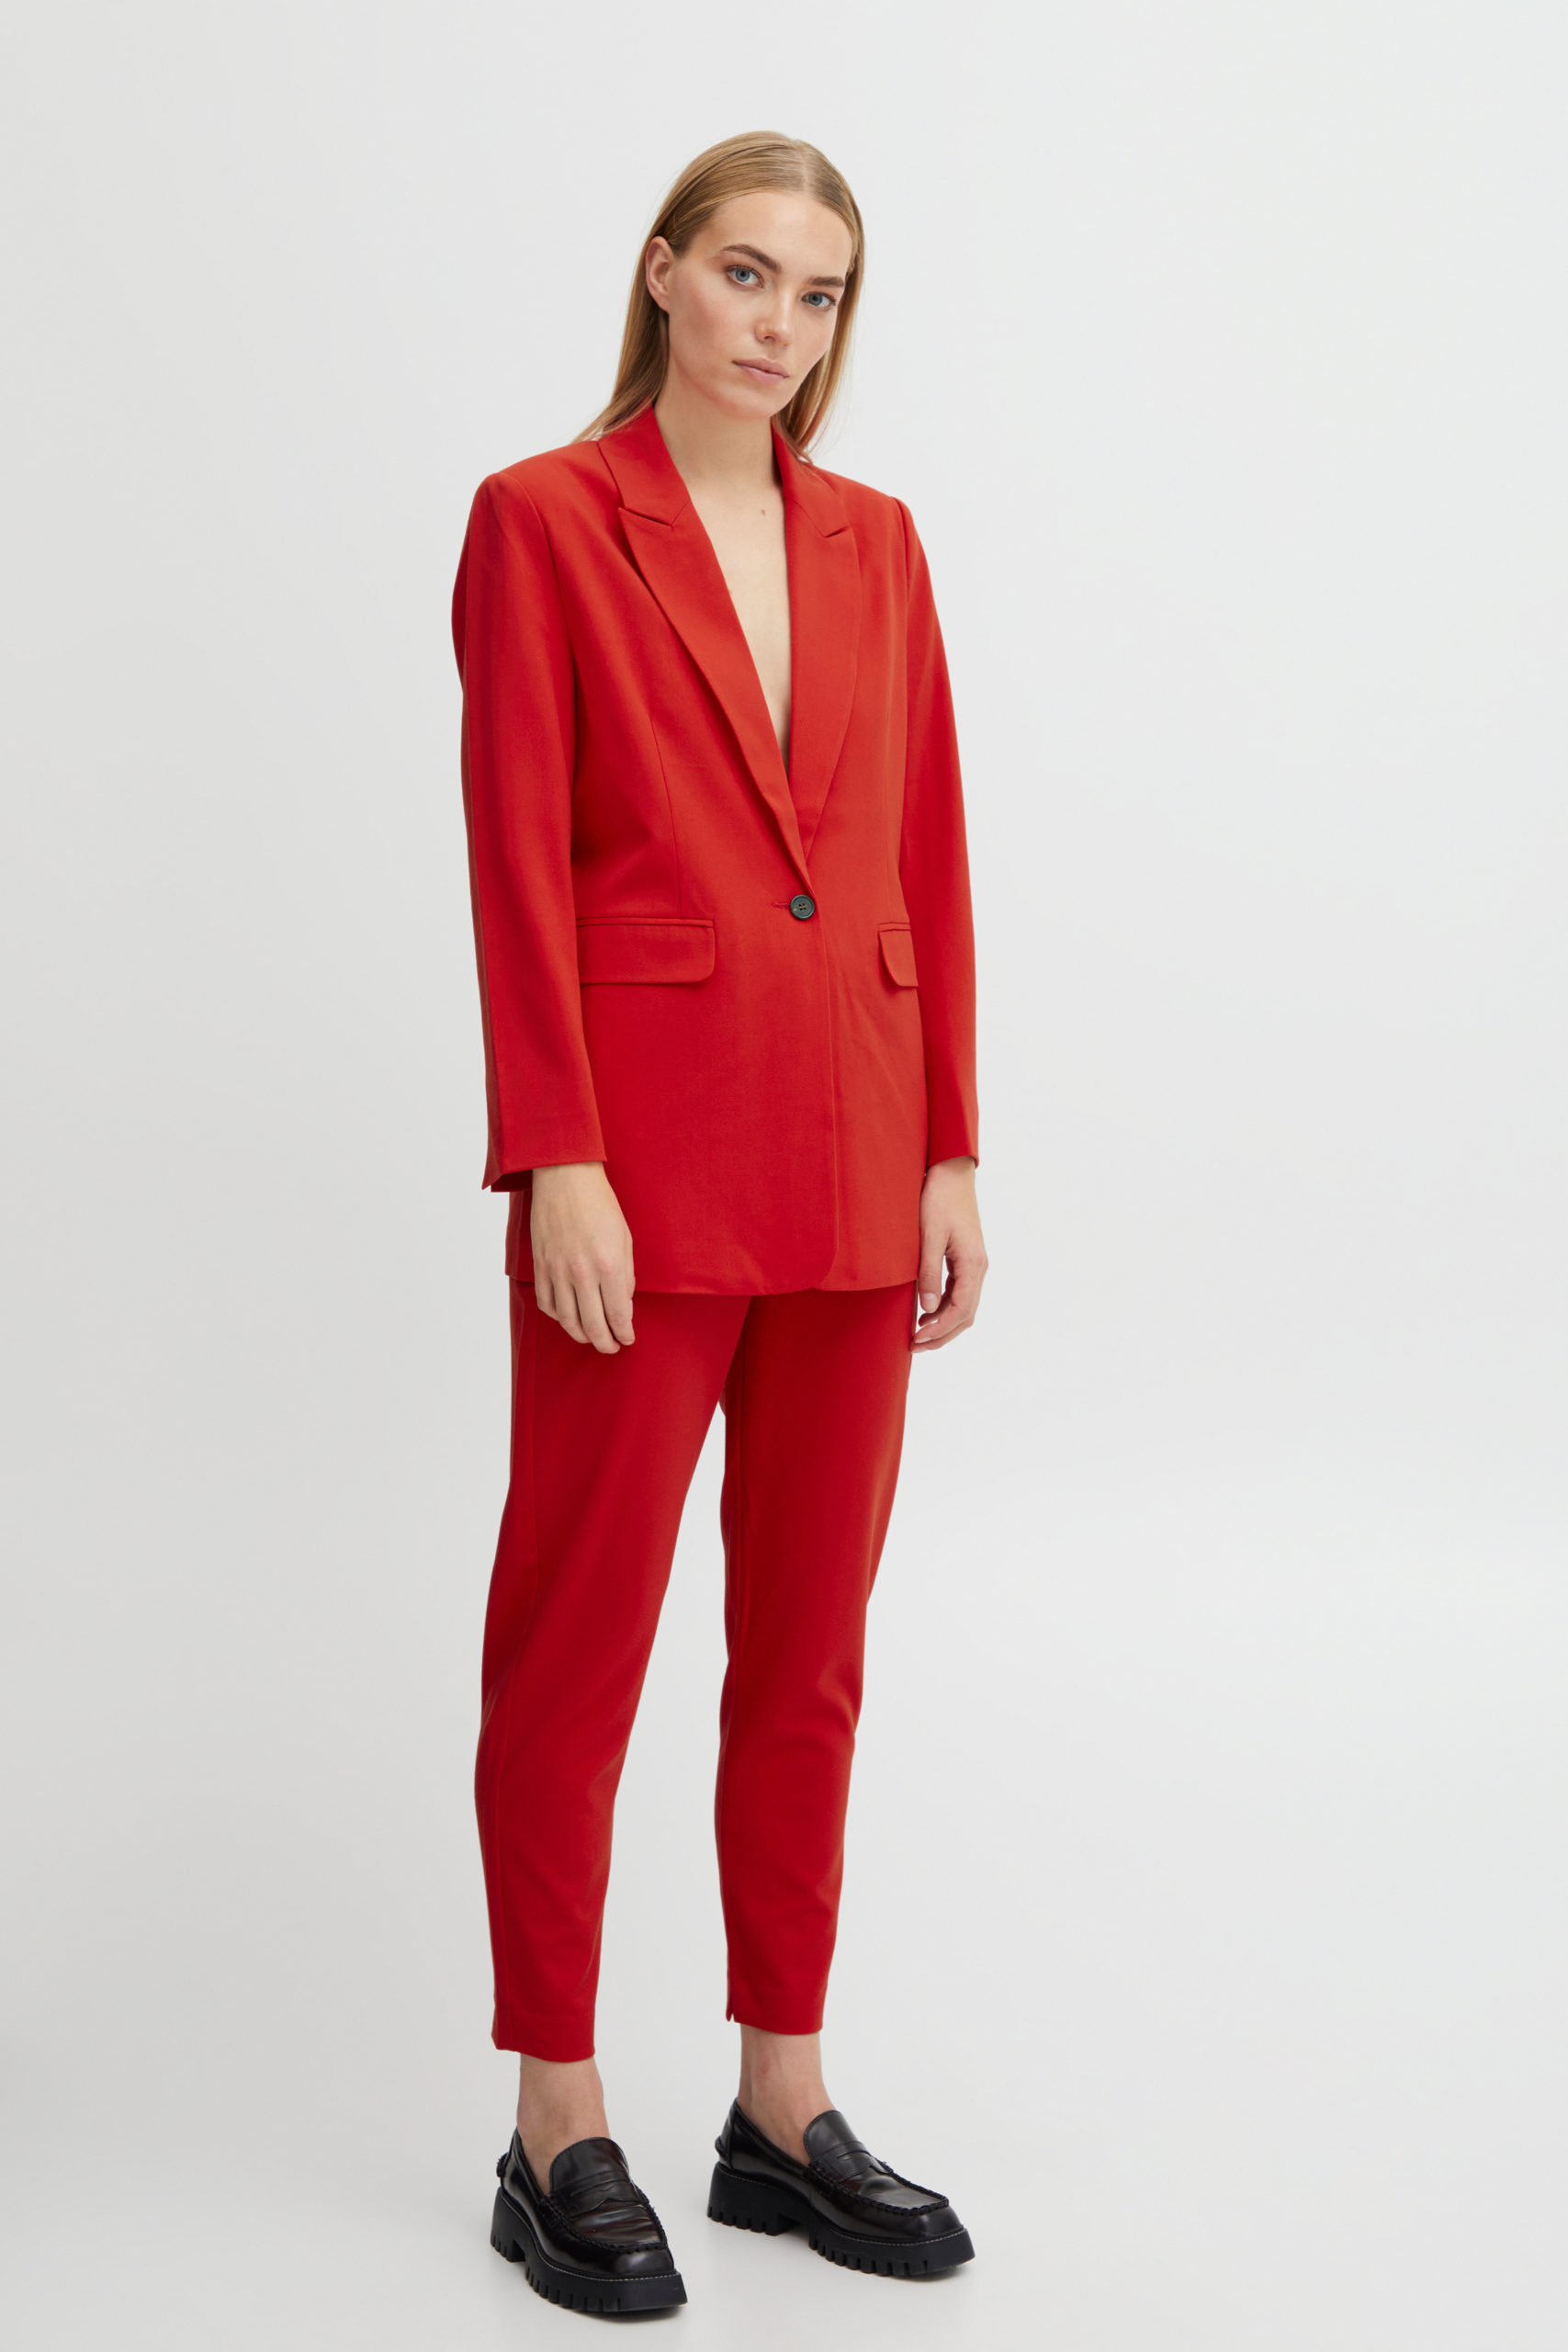 ByDanta Red Blazer suit